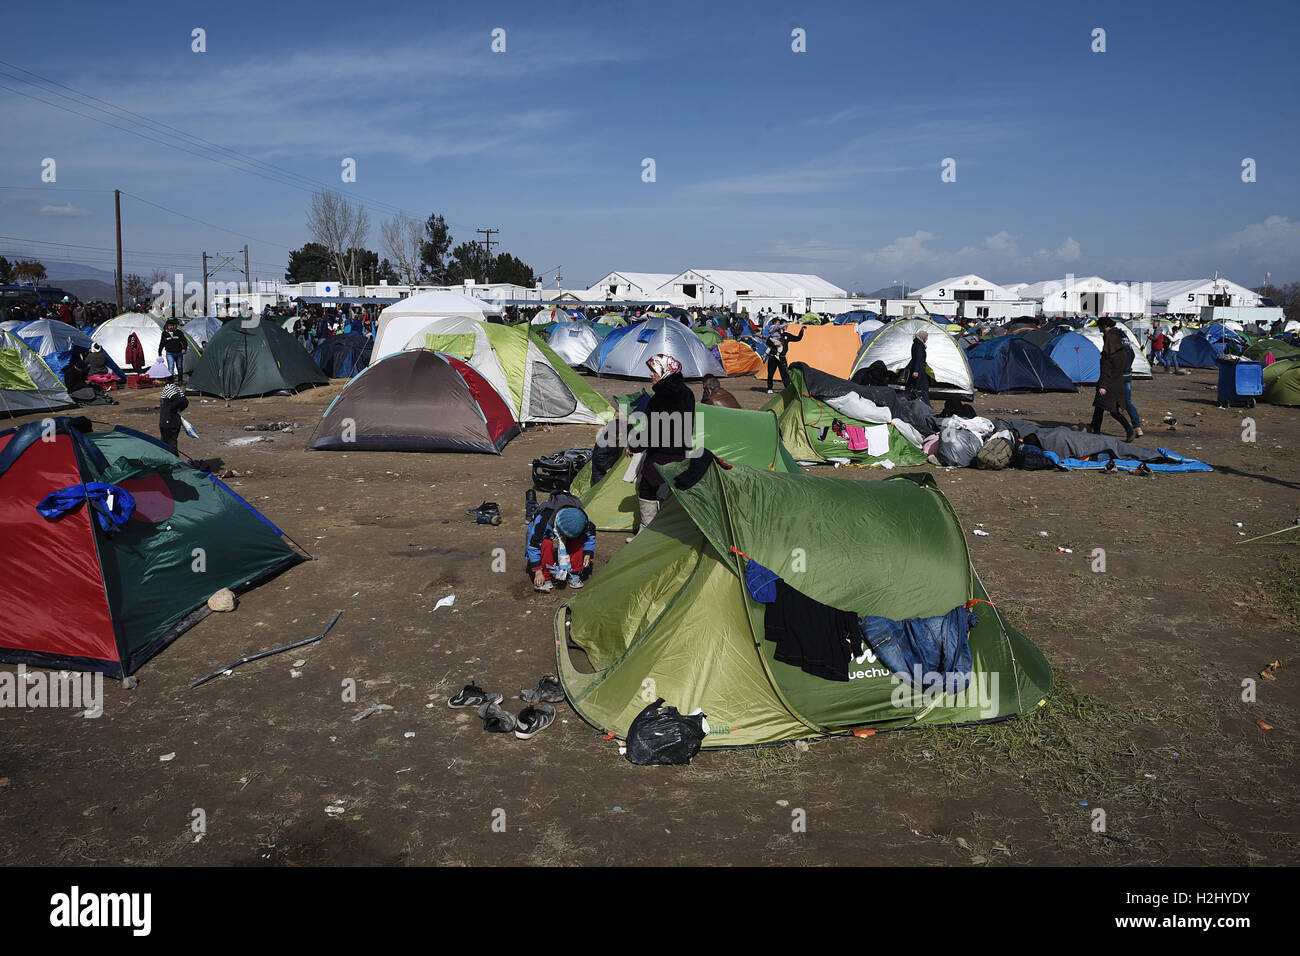 Zelte sind in einem Feld, in das Flüchtlingslager an der nördlichen griechischen Dorf Idomeni an der griechischen mazedonischen Grenze errichtet. Tausende von Flüchtlingen und Migranten saßen monatelang an der griechischen mazedonischen Grenze, im Flüchtlingslager in der Nähe des Dorfes Idomeni, bis die griechische Regierung beschlossen, das Gebiet zu evakuieren. Stockfoto